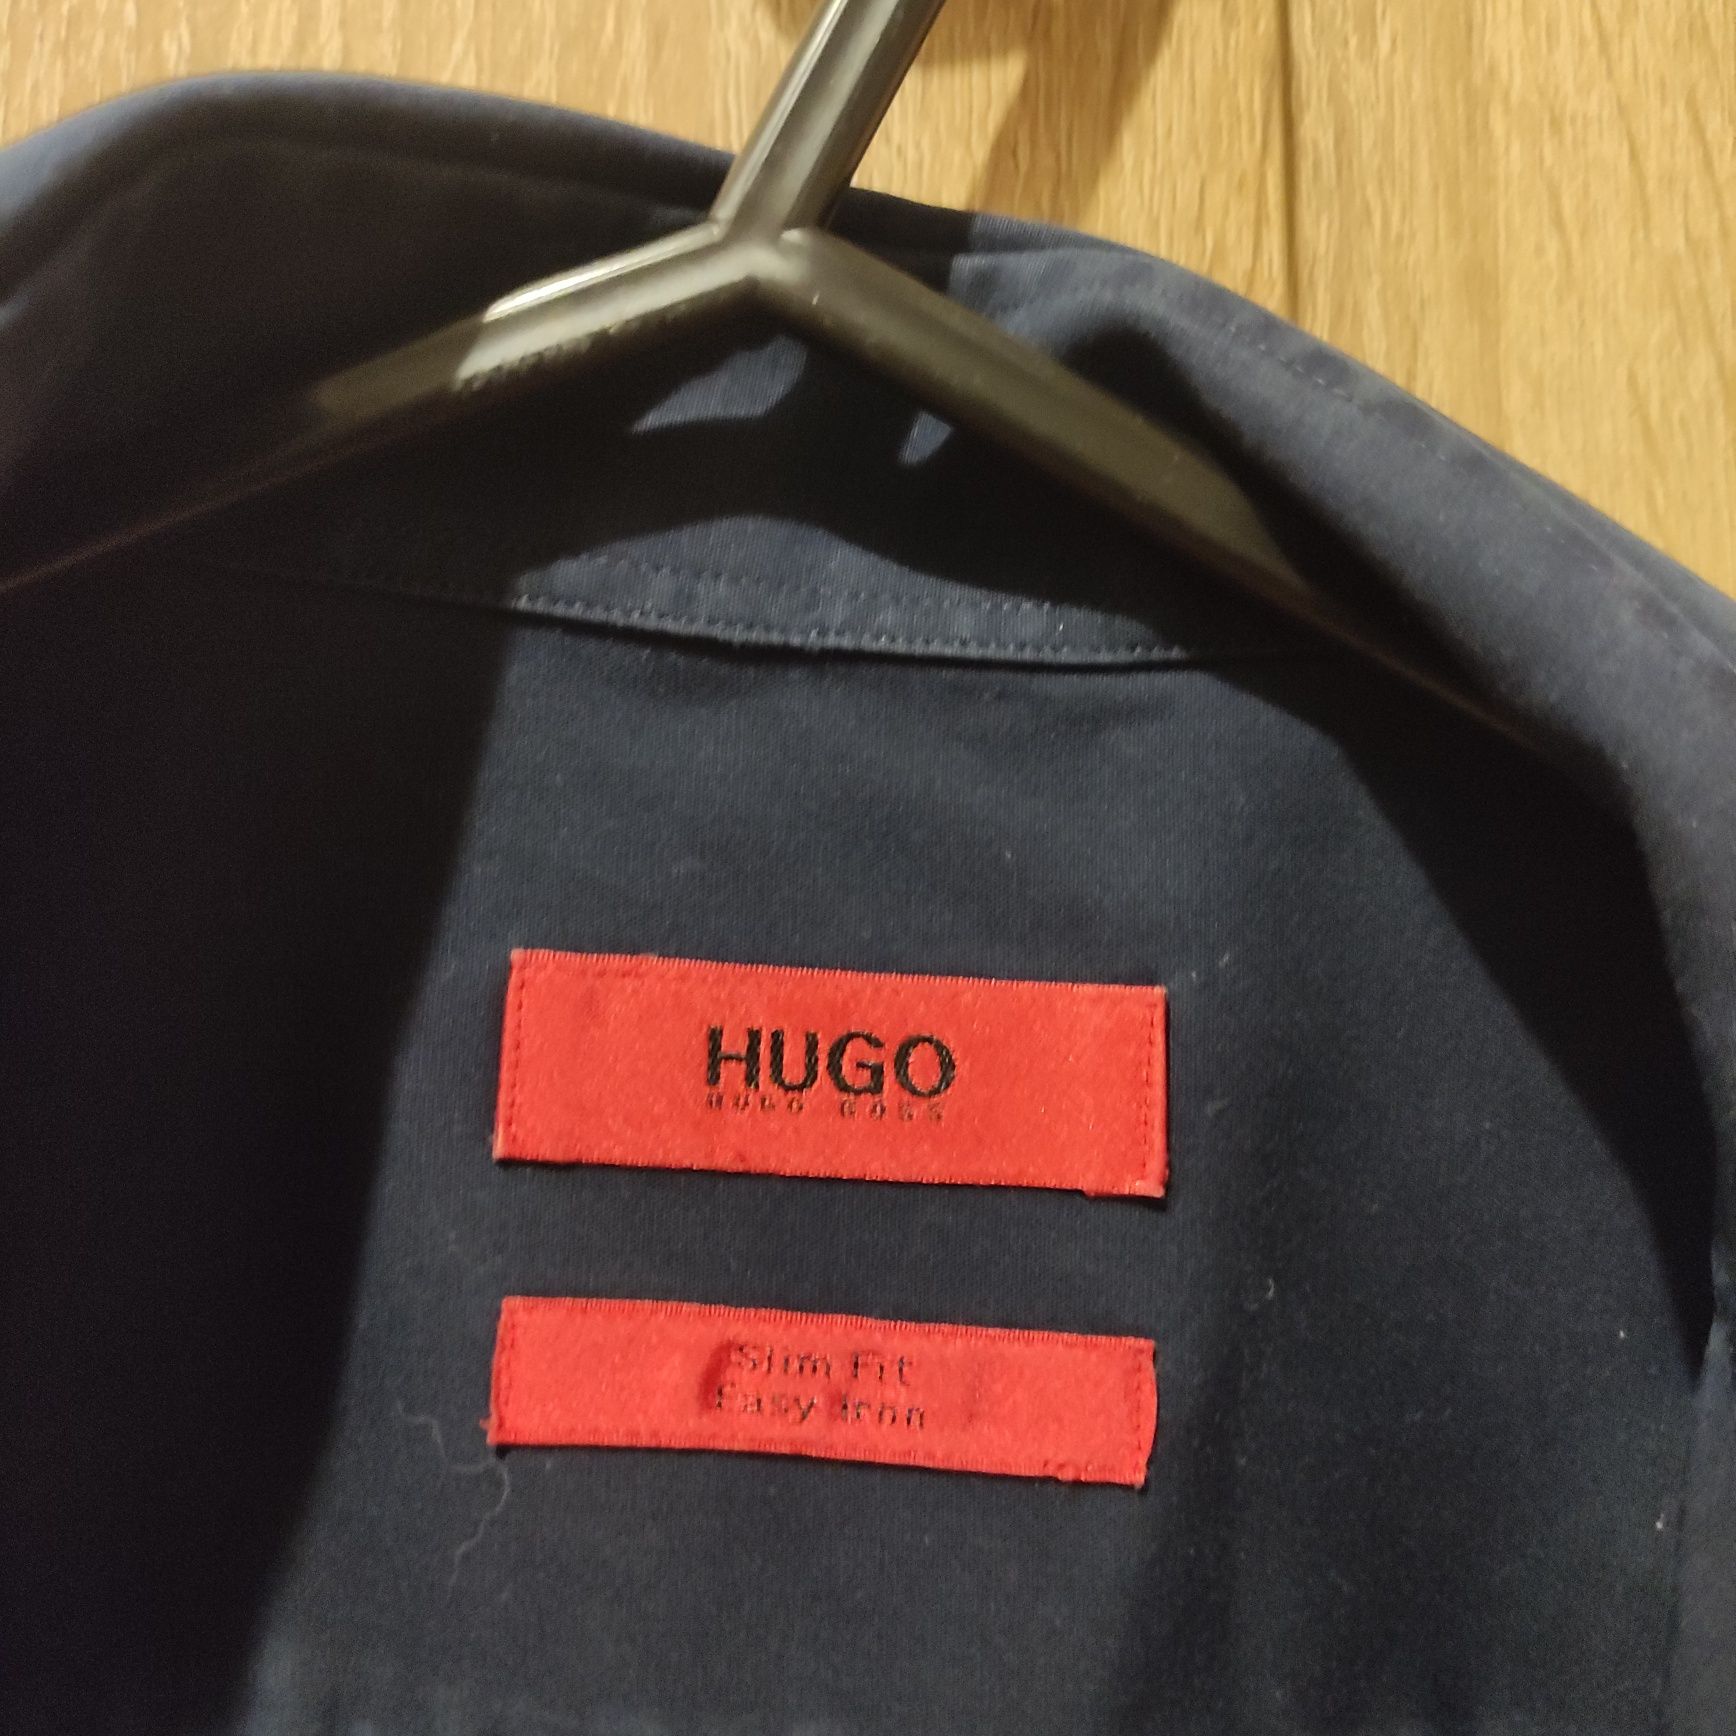 Cămăși Hugo boss (2buc)